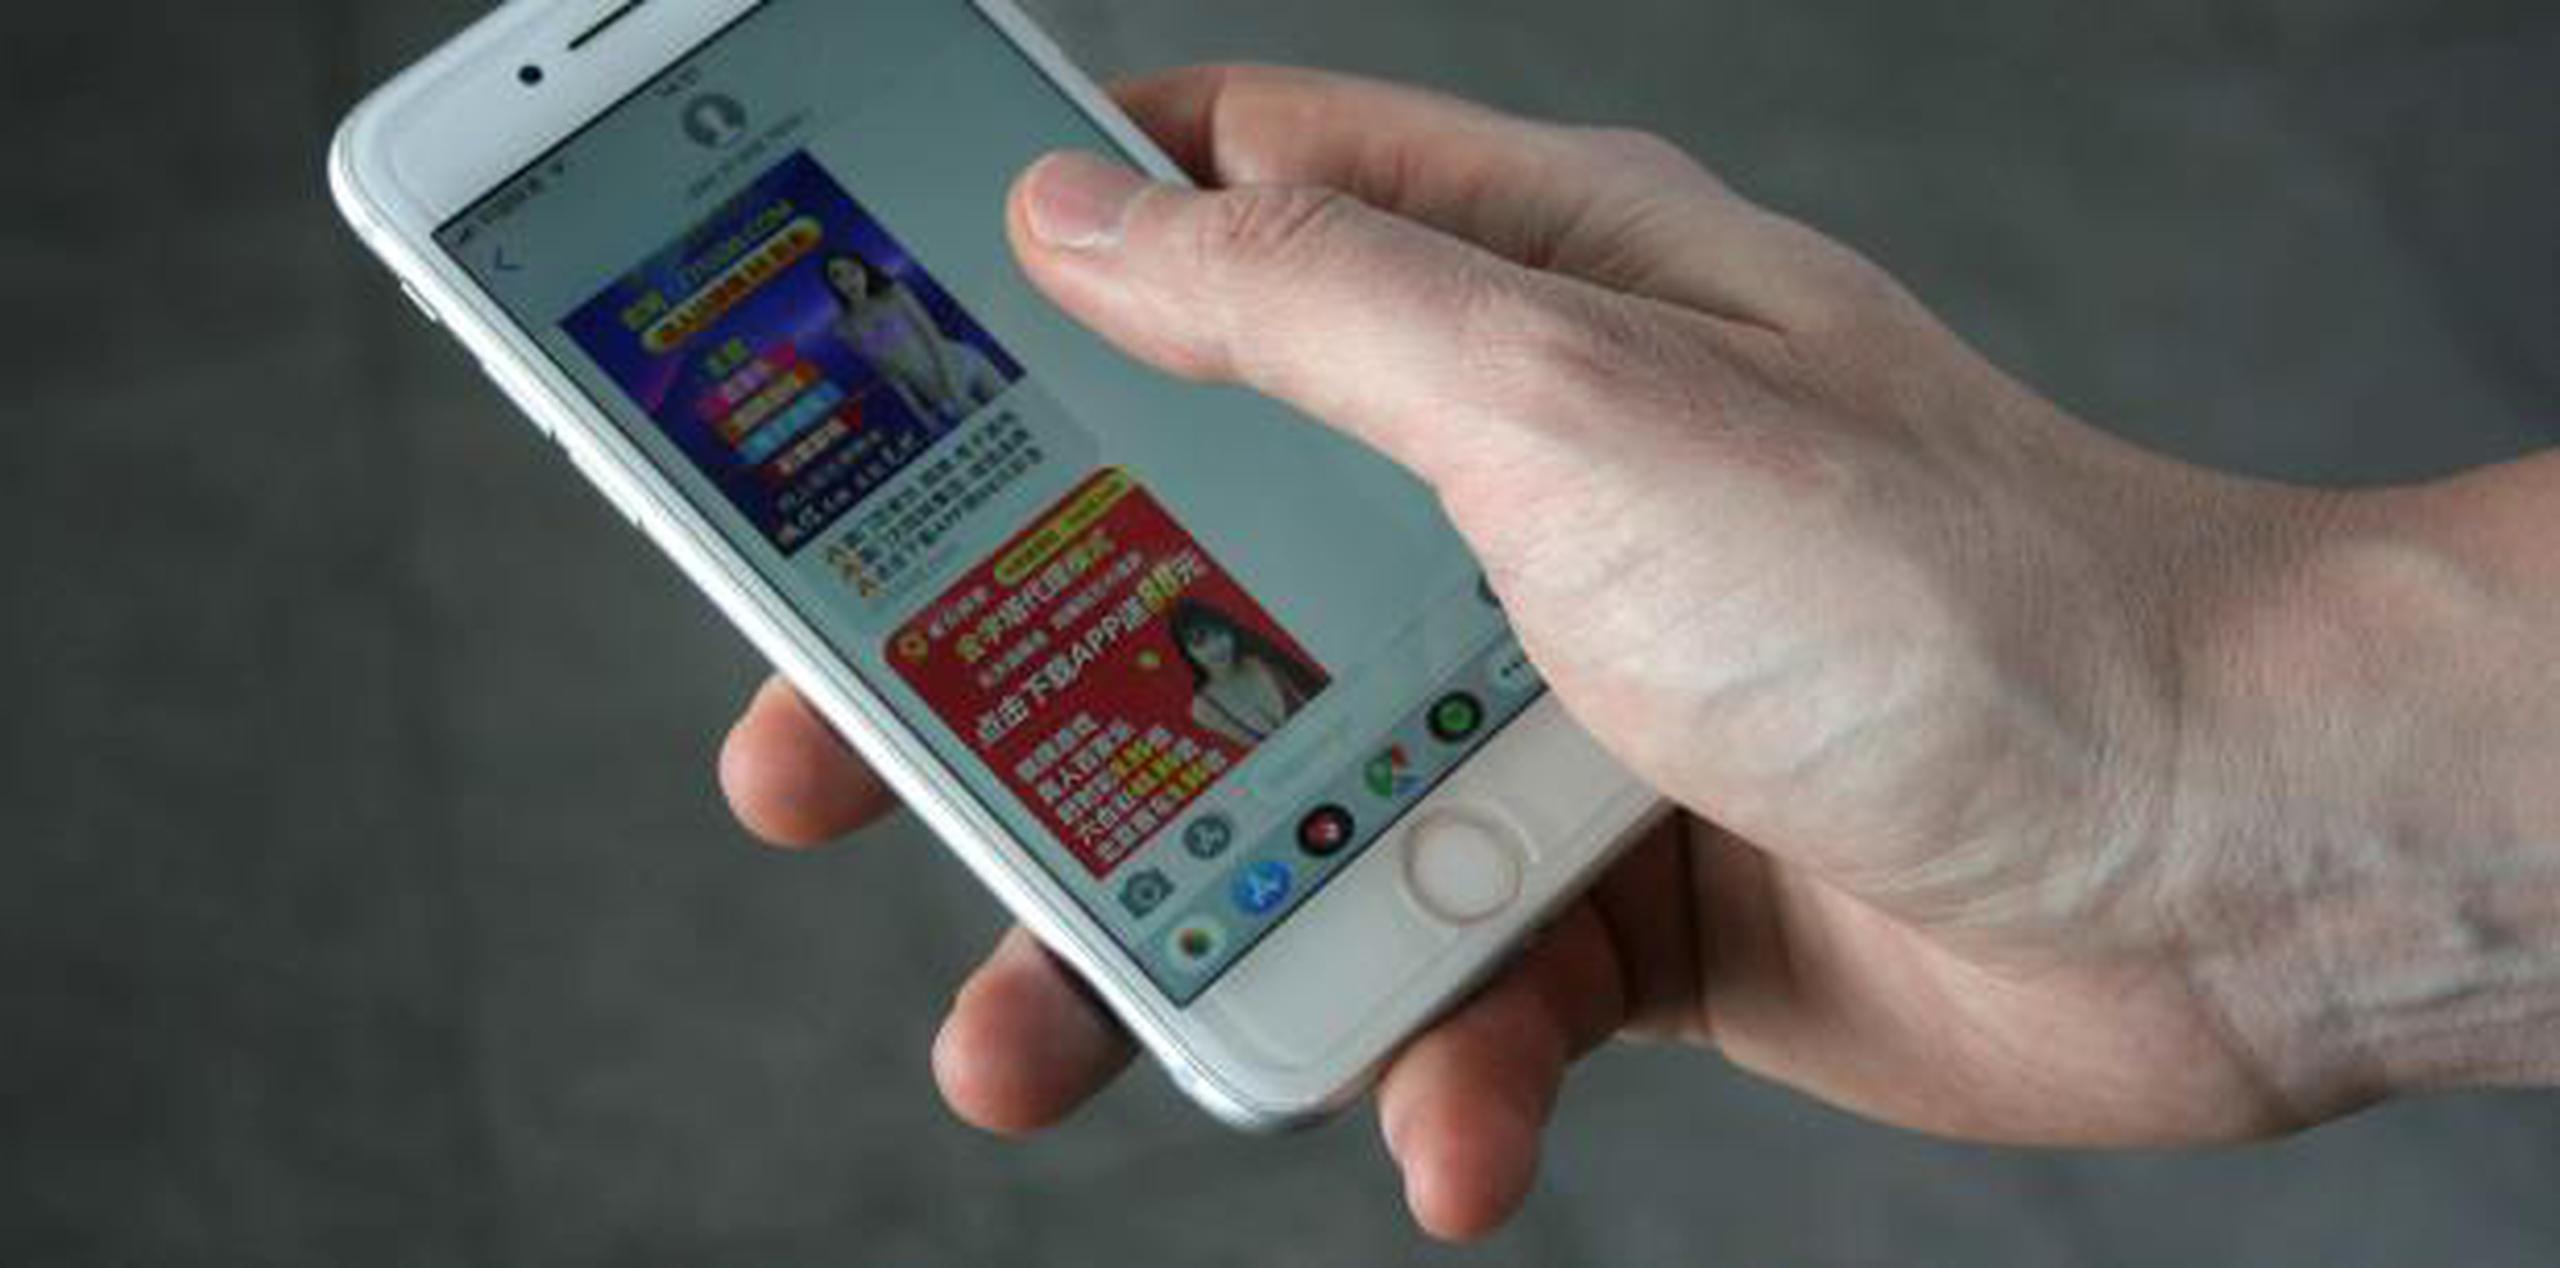 Una persona muestra su teléfono móvil con publicidad erótica, en Pekín, China. (EFE)